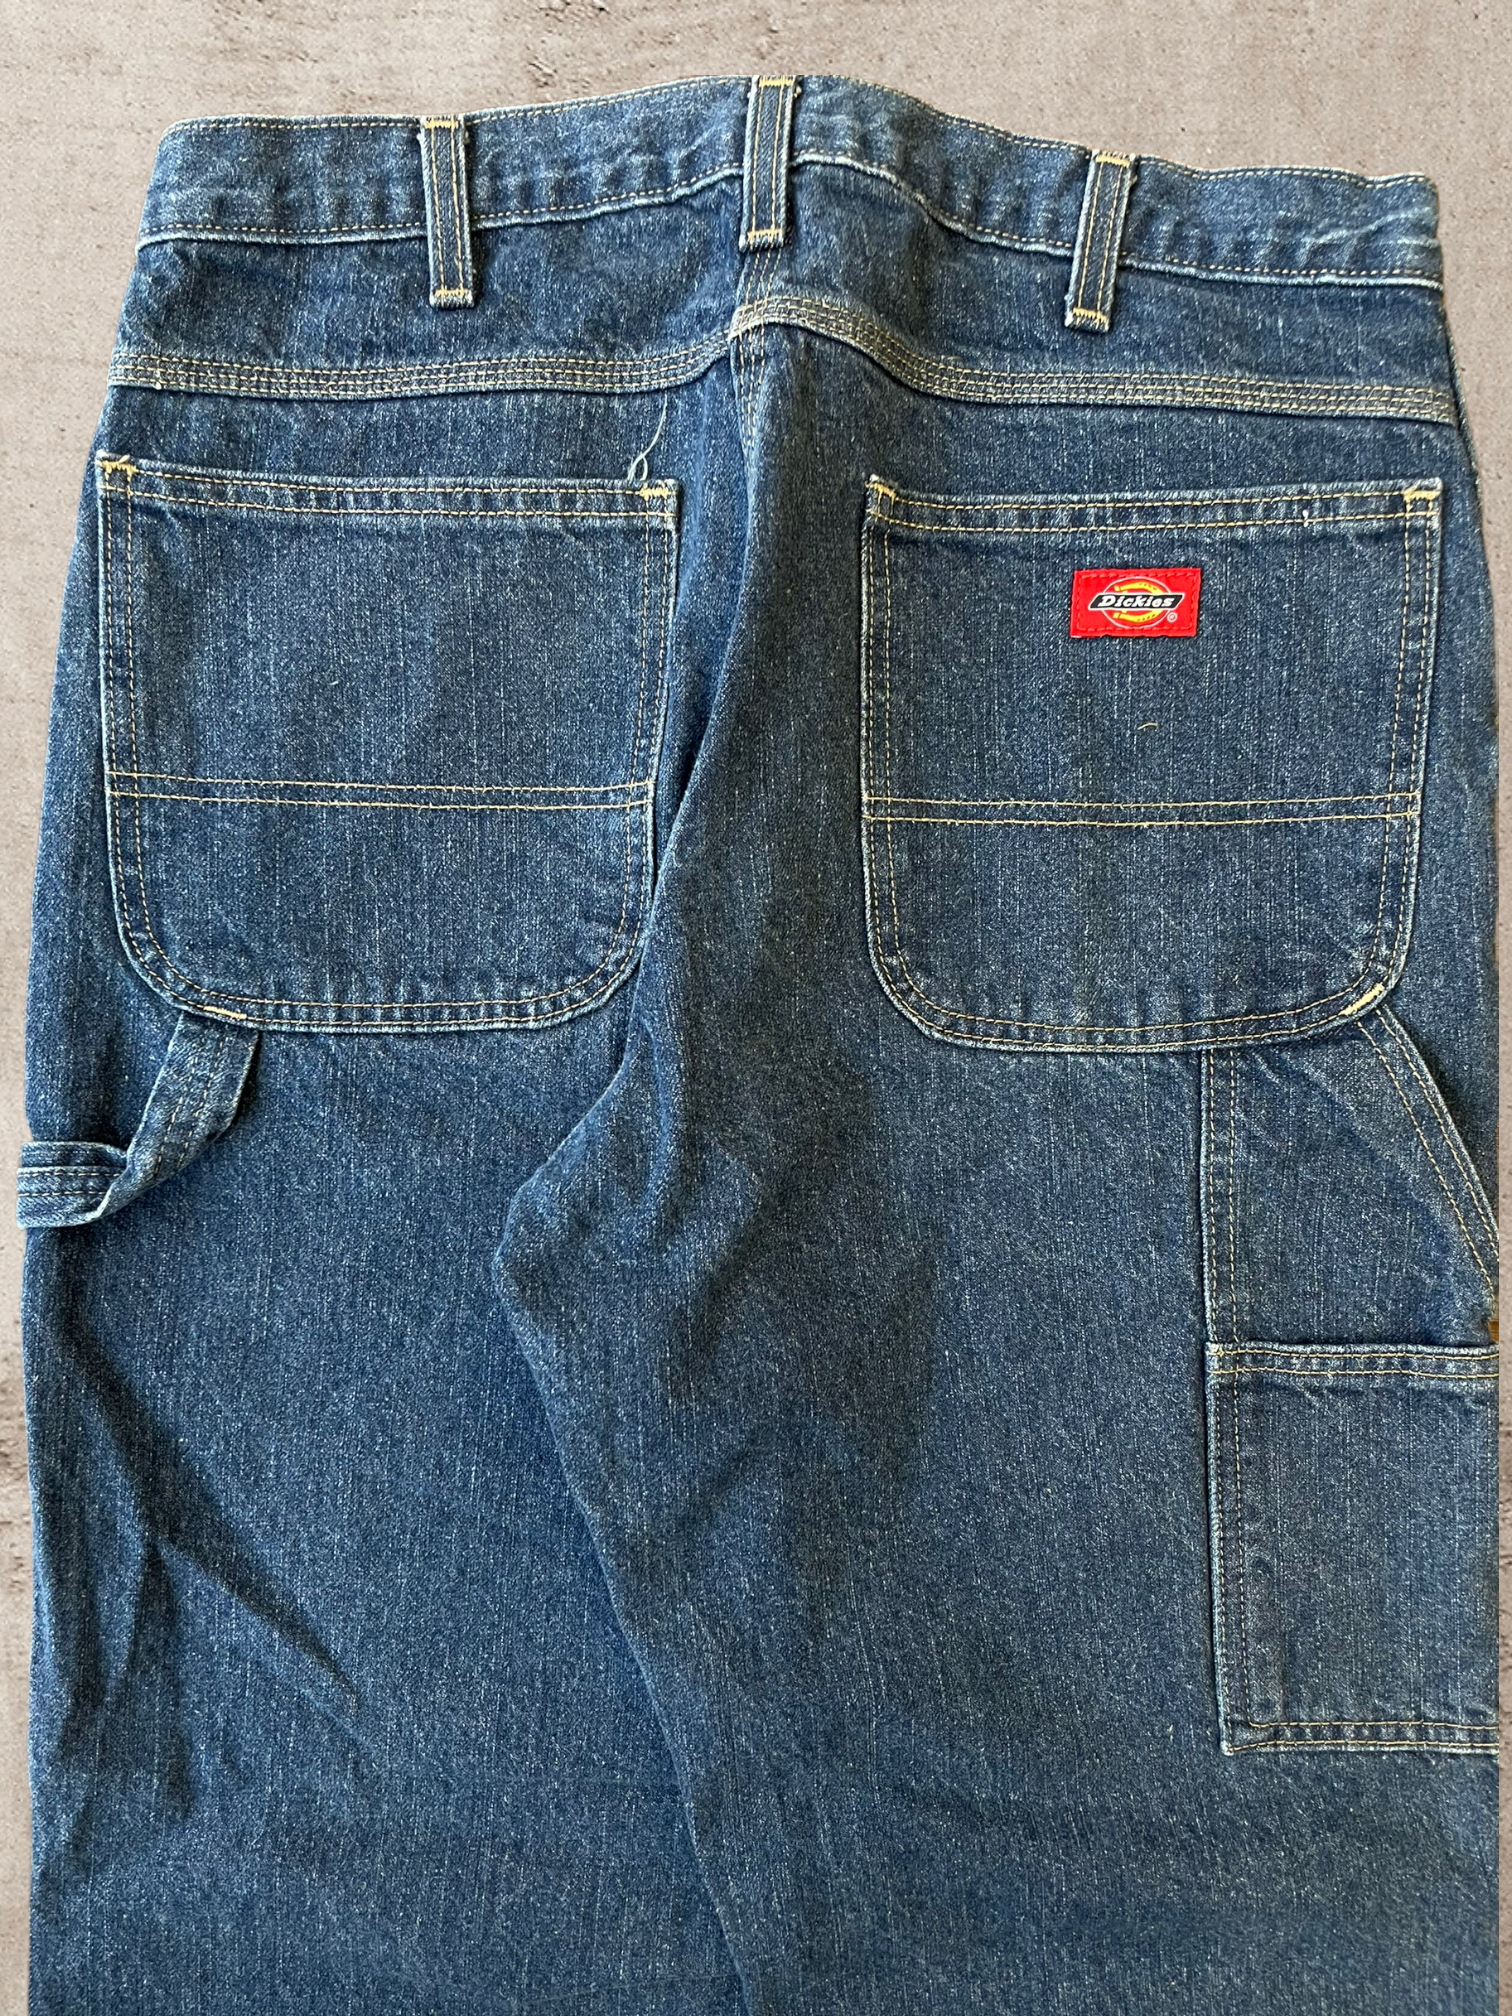 Vintage Dickies Carpenter Jeans - 34x28